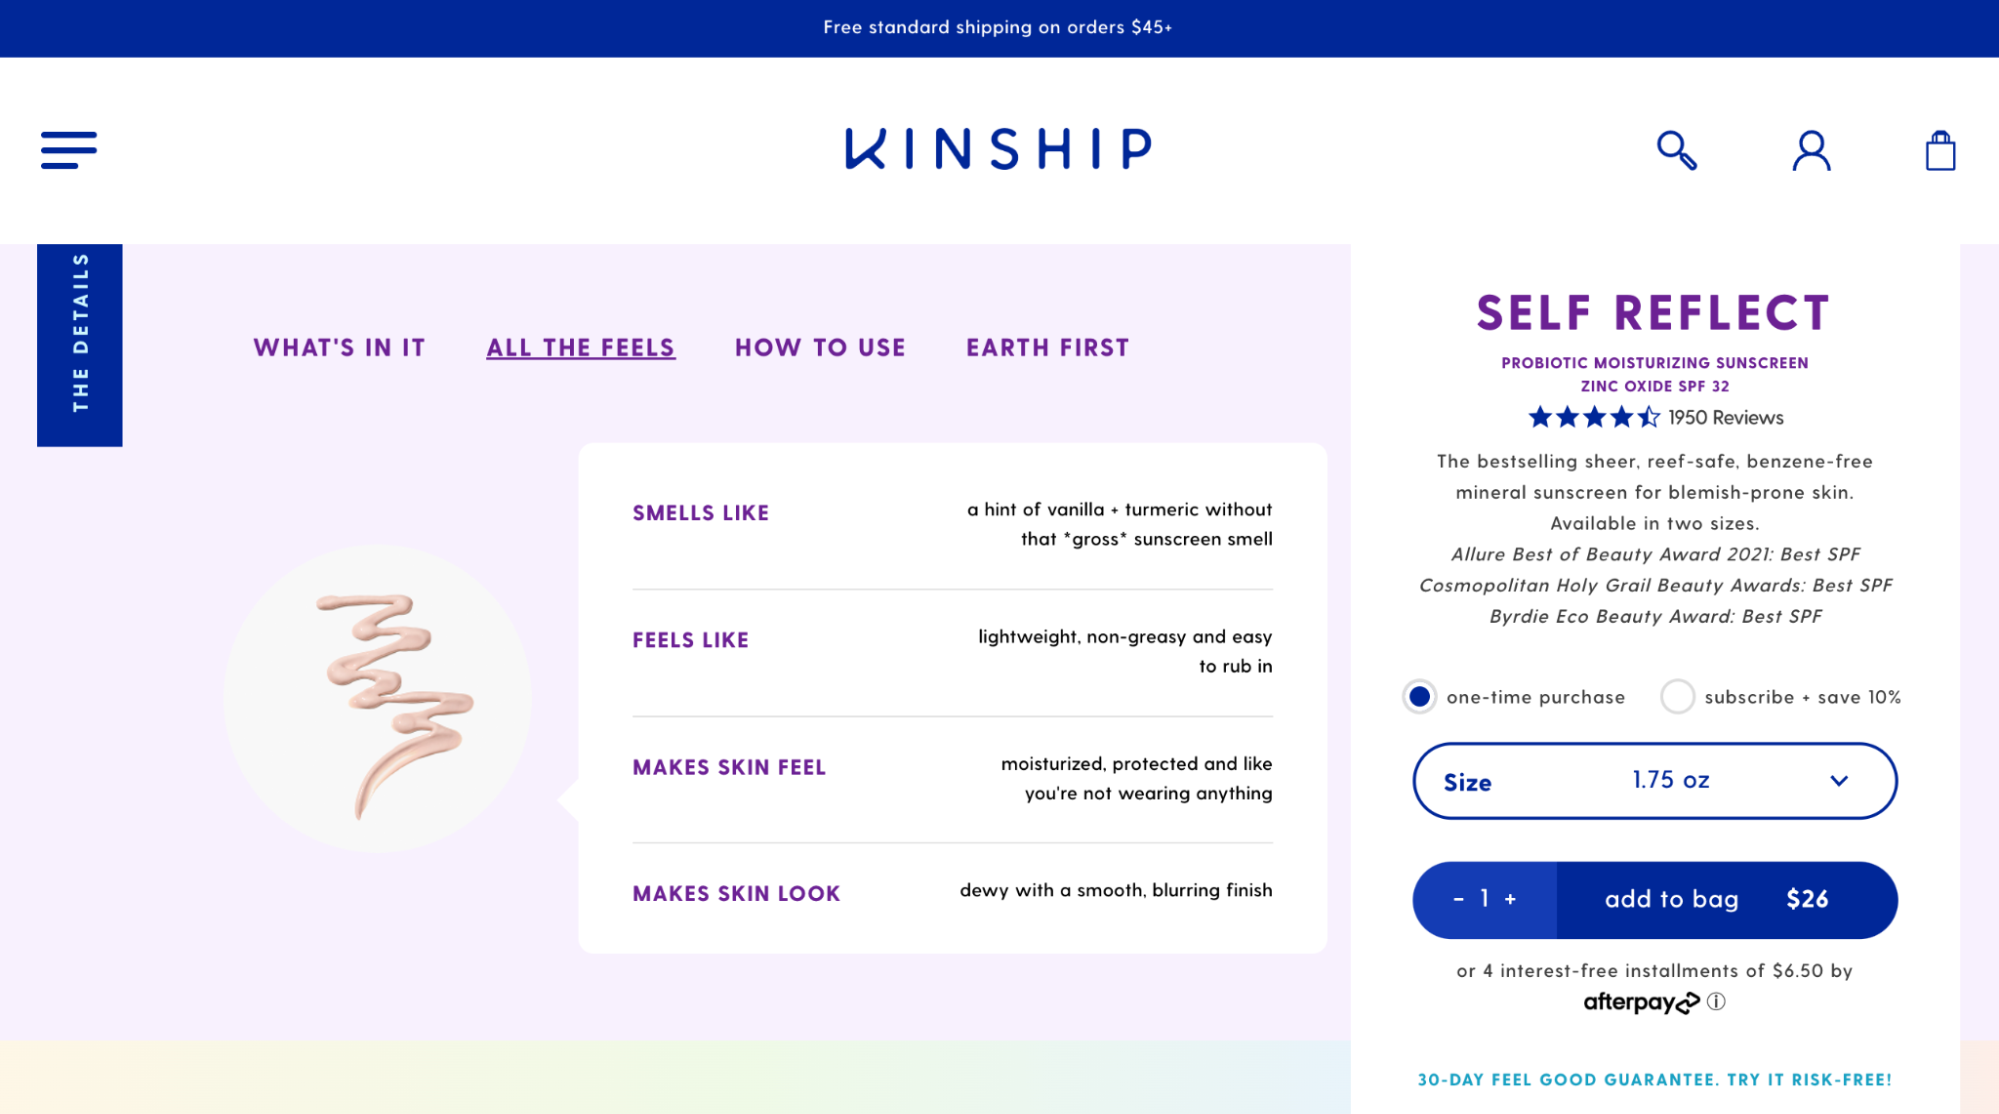 Kinship product page